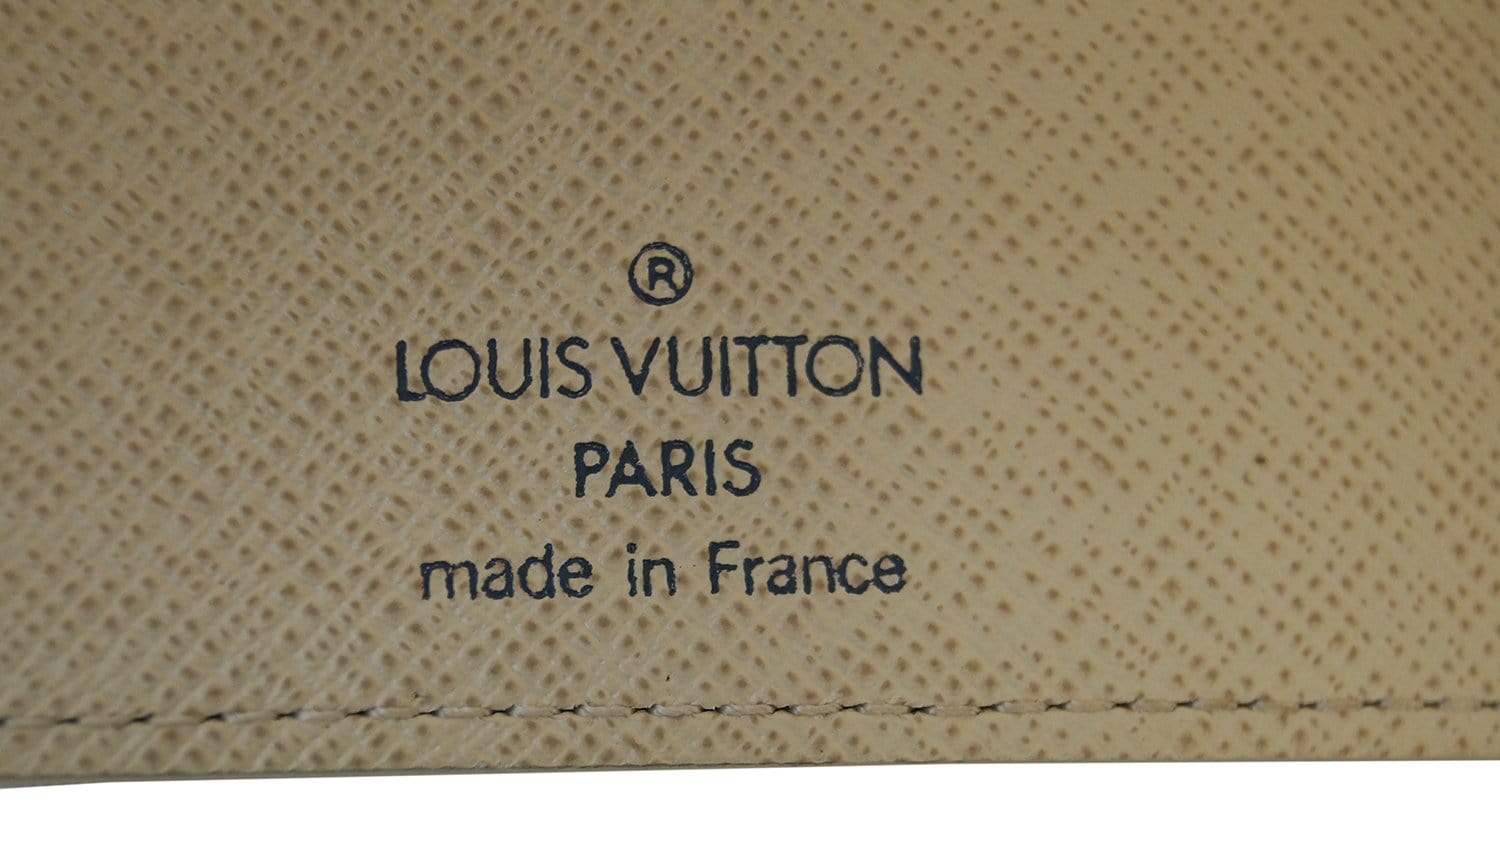 Louis Vuitton Agenda MM Authentic VS Fake!! 